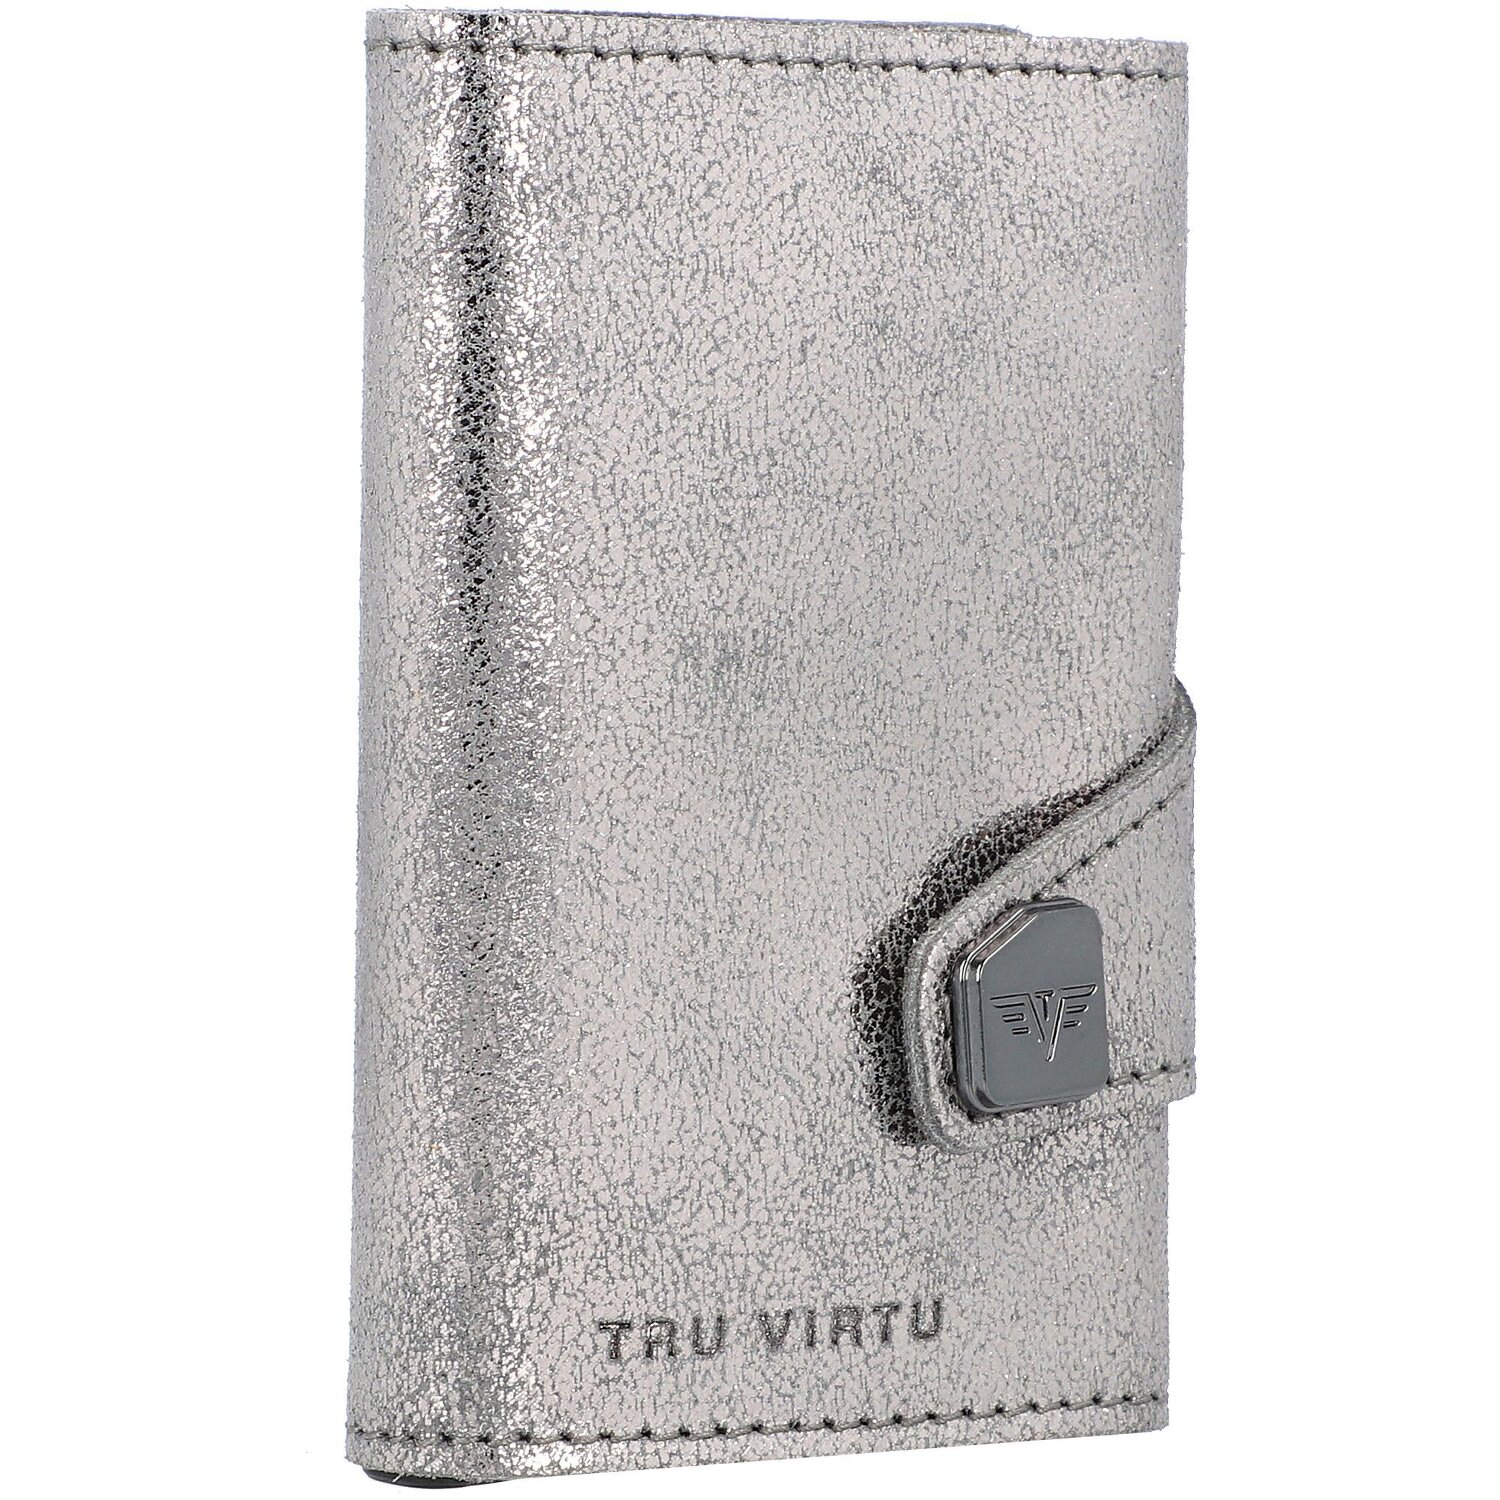 Tru Virtu Custodia per carte di credito RFID in pelle 6,5 cm  silvergrey-silv